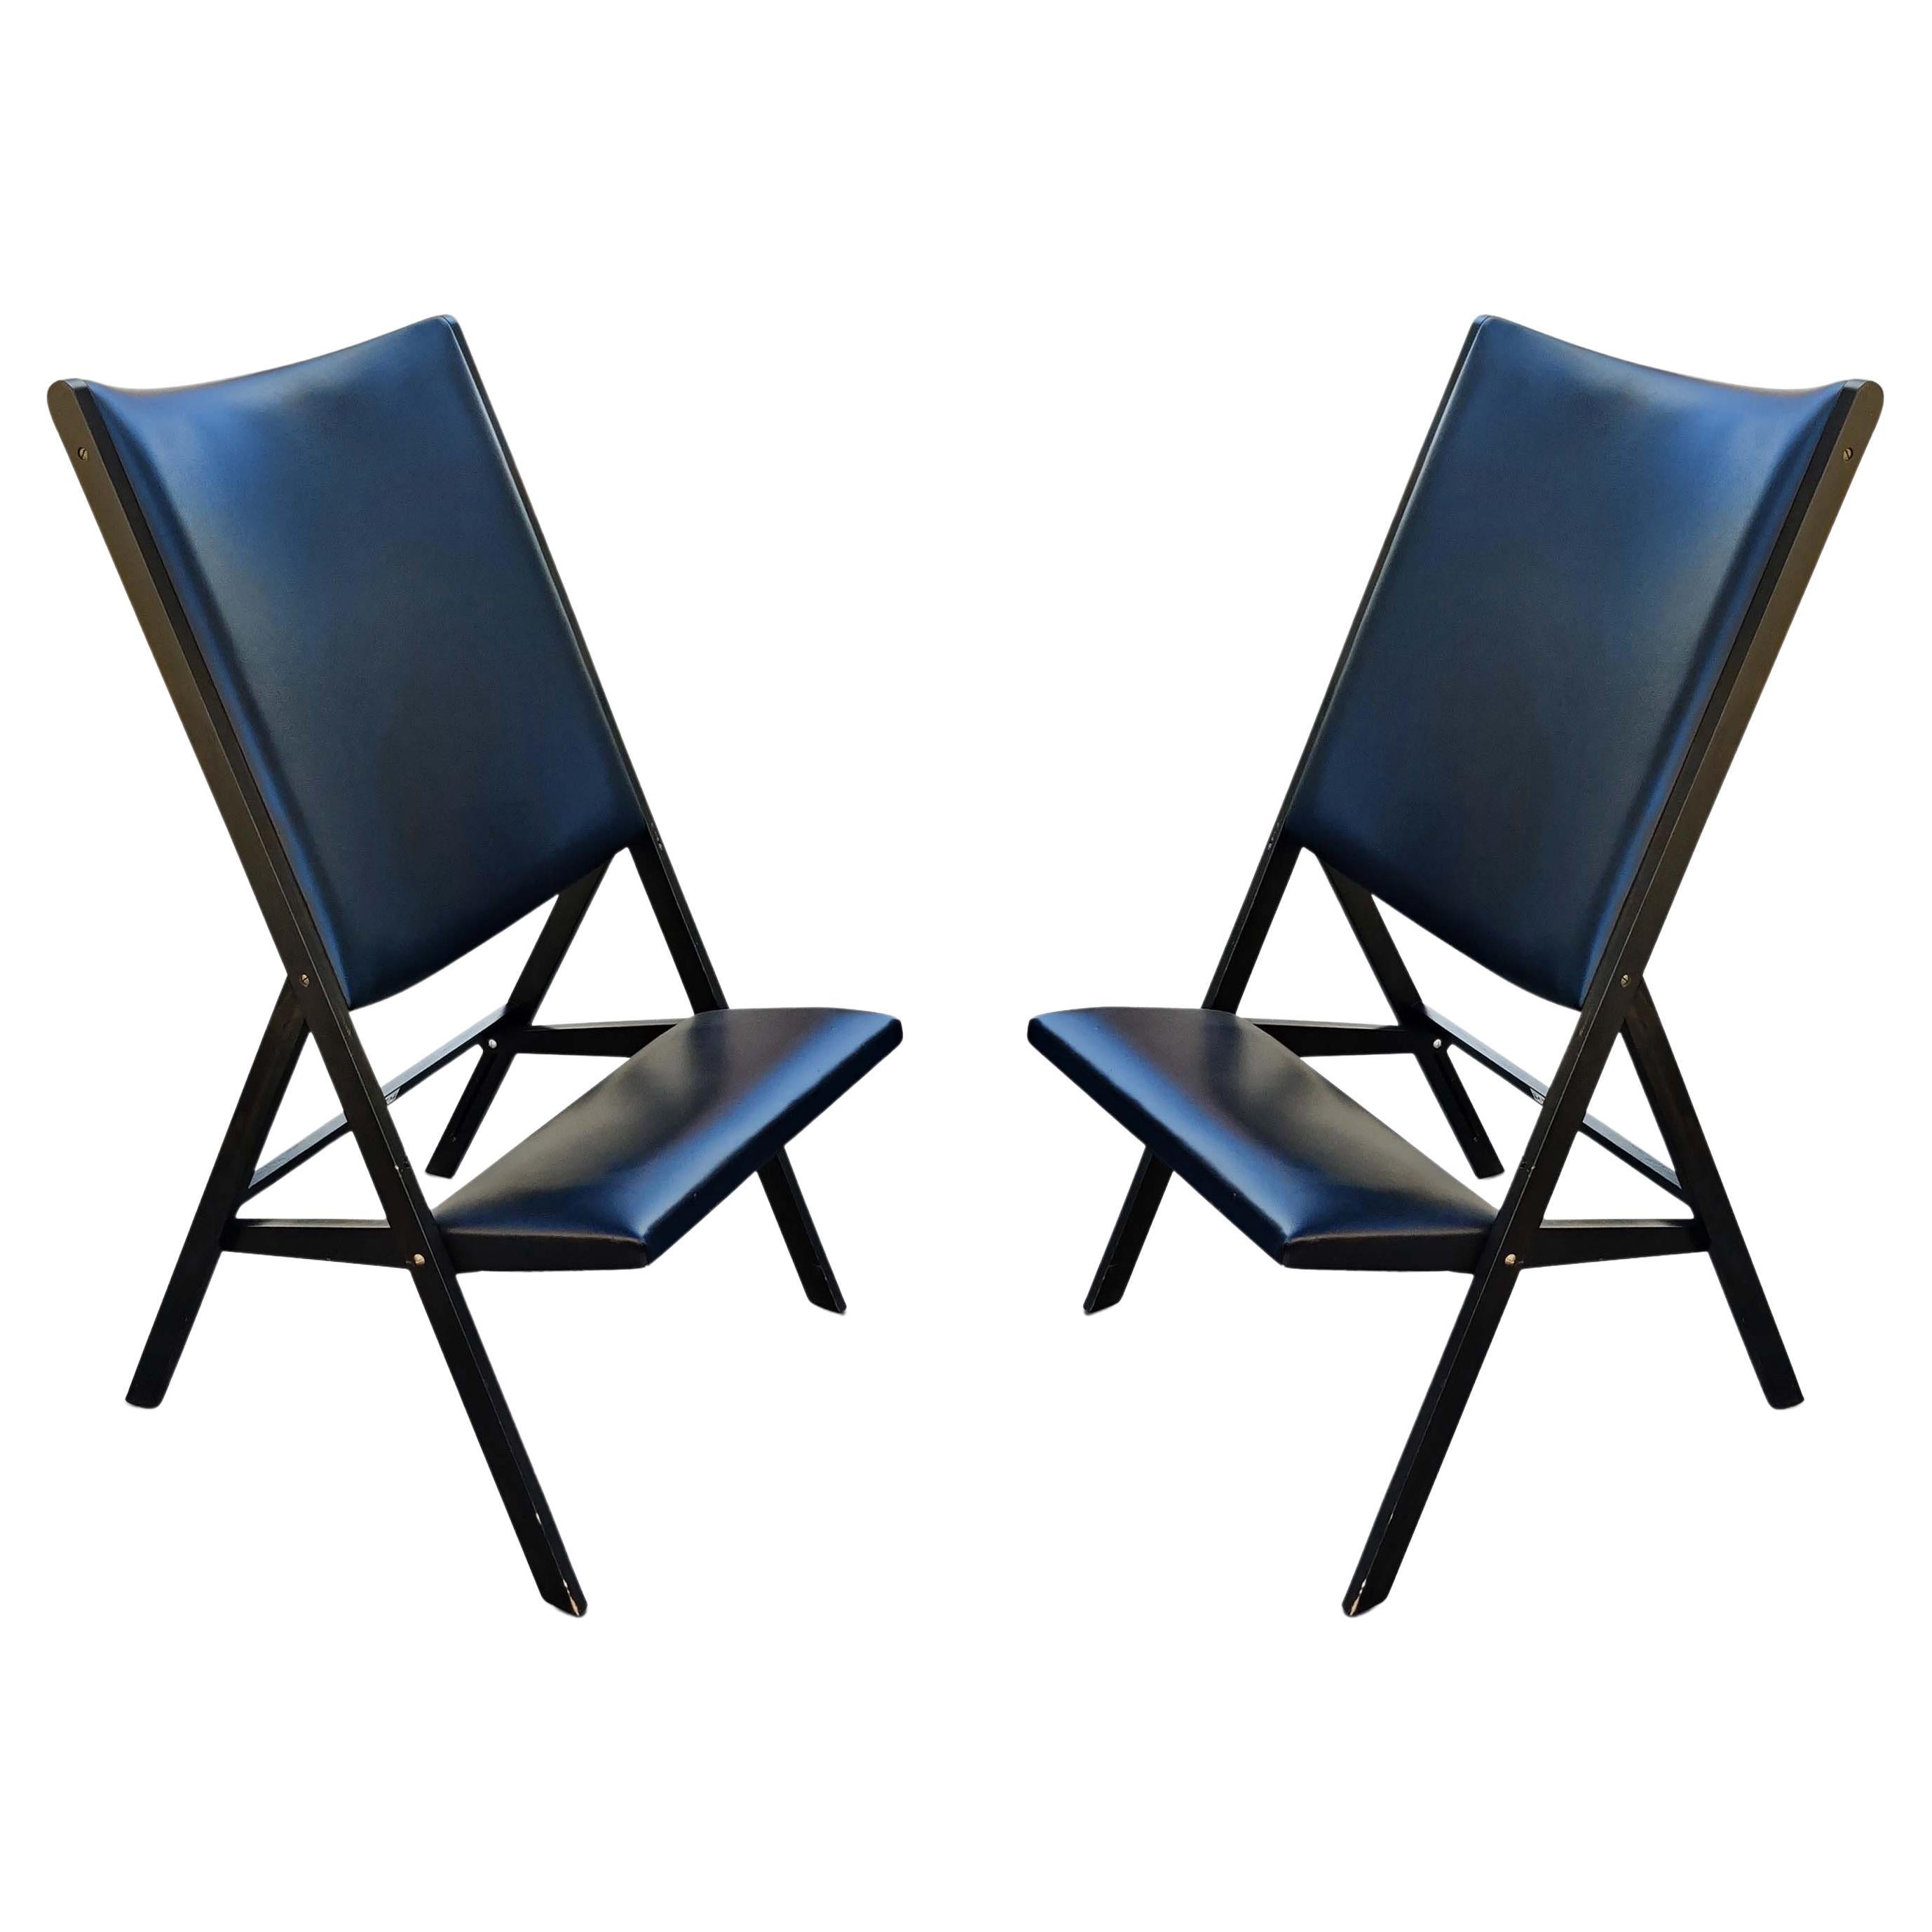 Paire de chaises pliantes Gio Ponti pour Walter Ponti Gabriella modèle D.270.2 noires